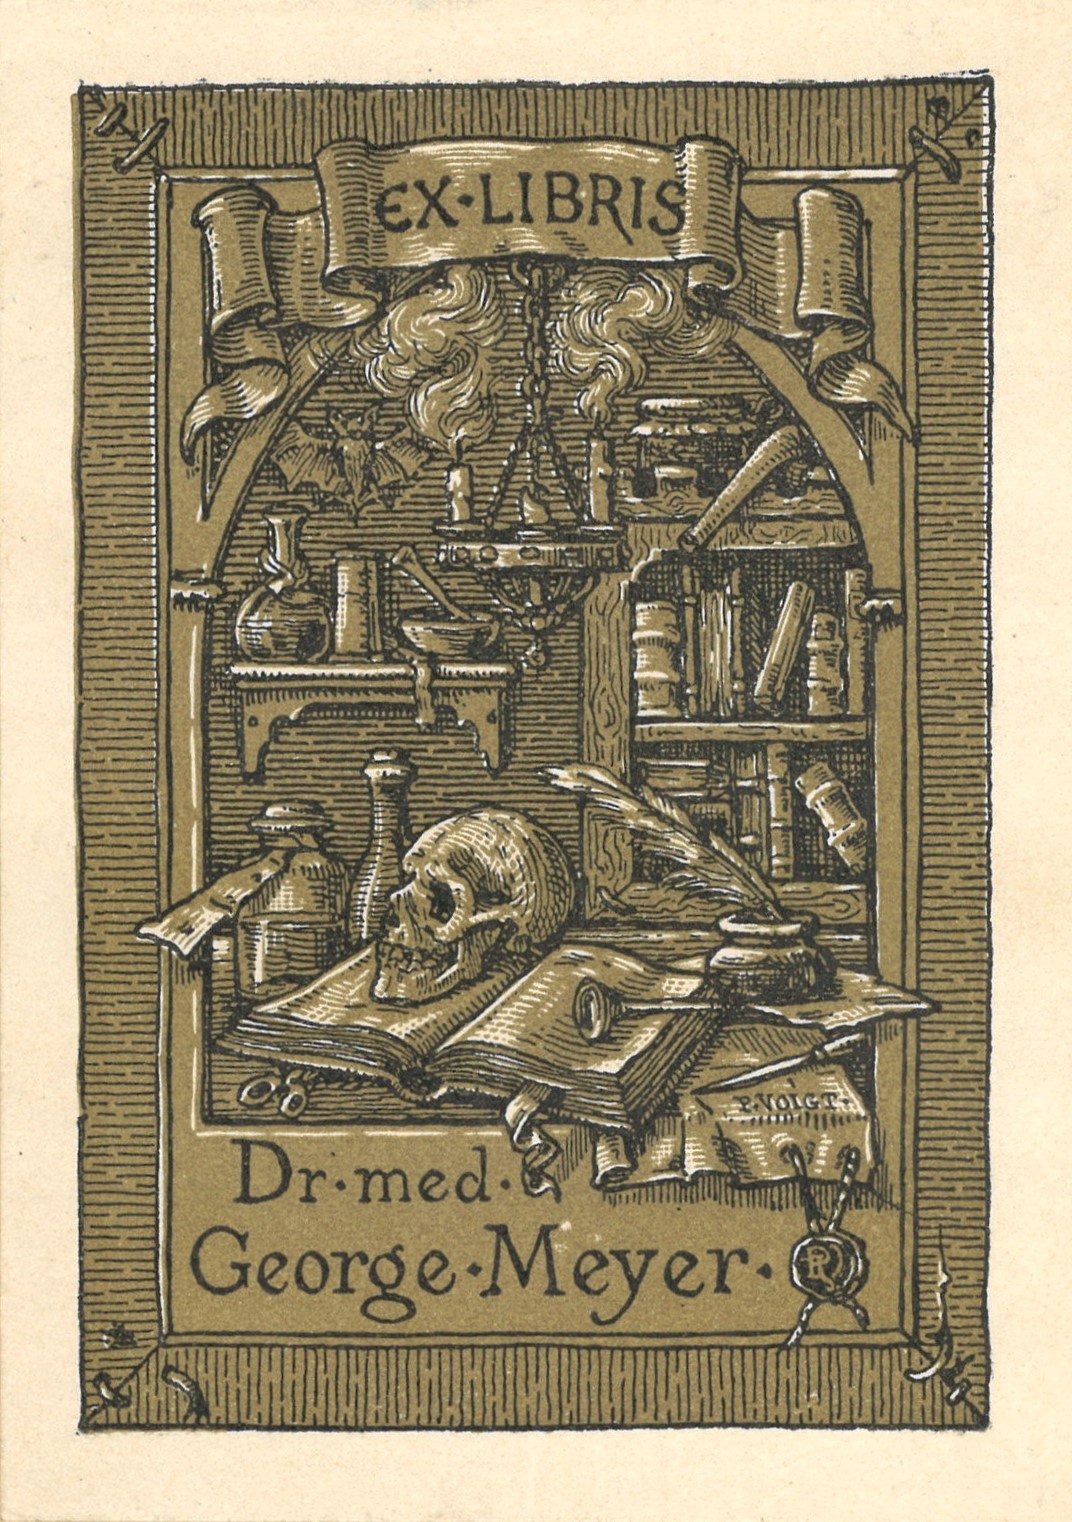 Exlibris Dr. med. George Meyer (Landesgeschichtliche Vereinigung für die Mark Brandenburg e.V. CC BY)